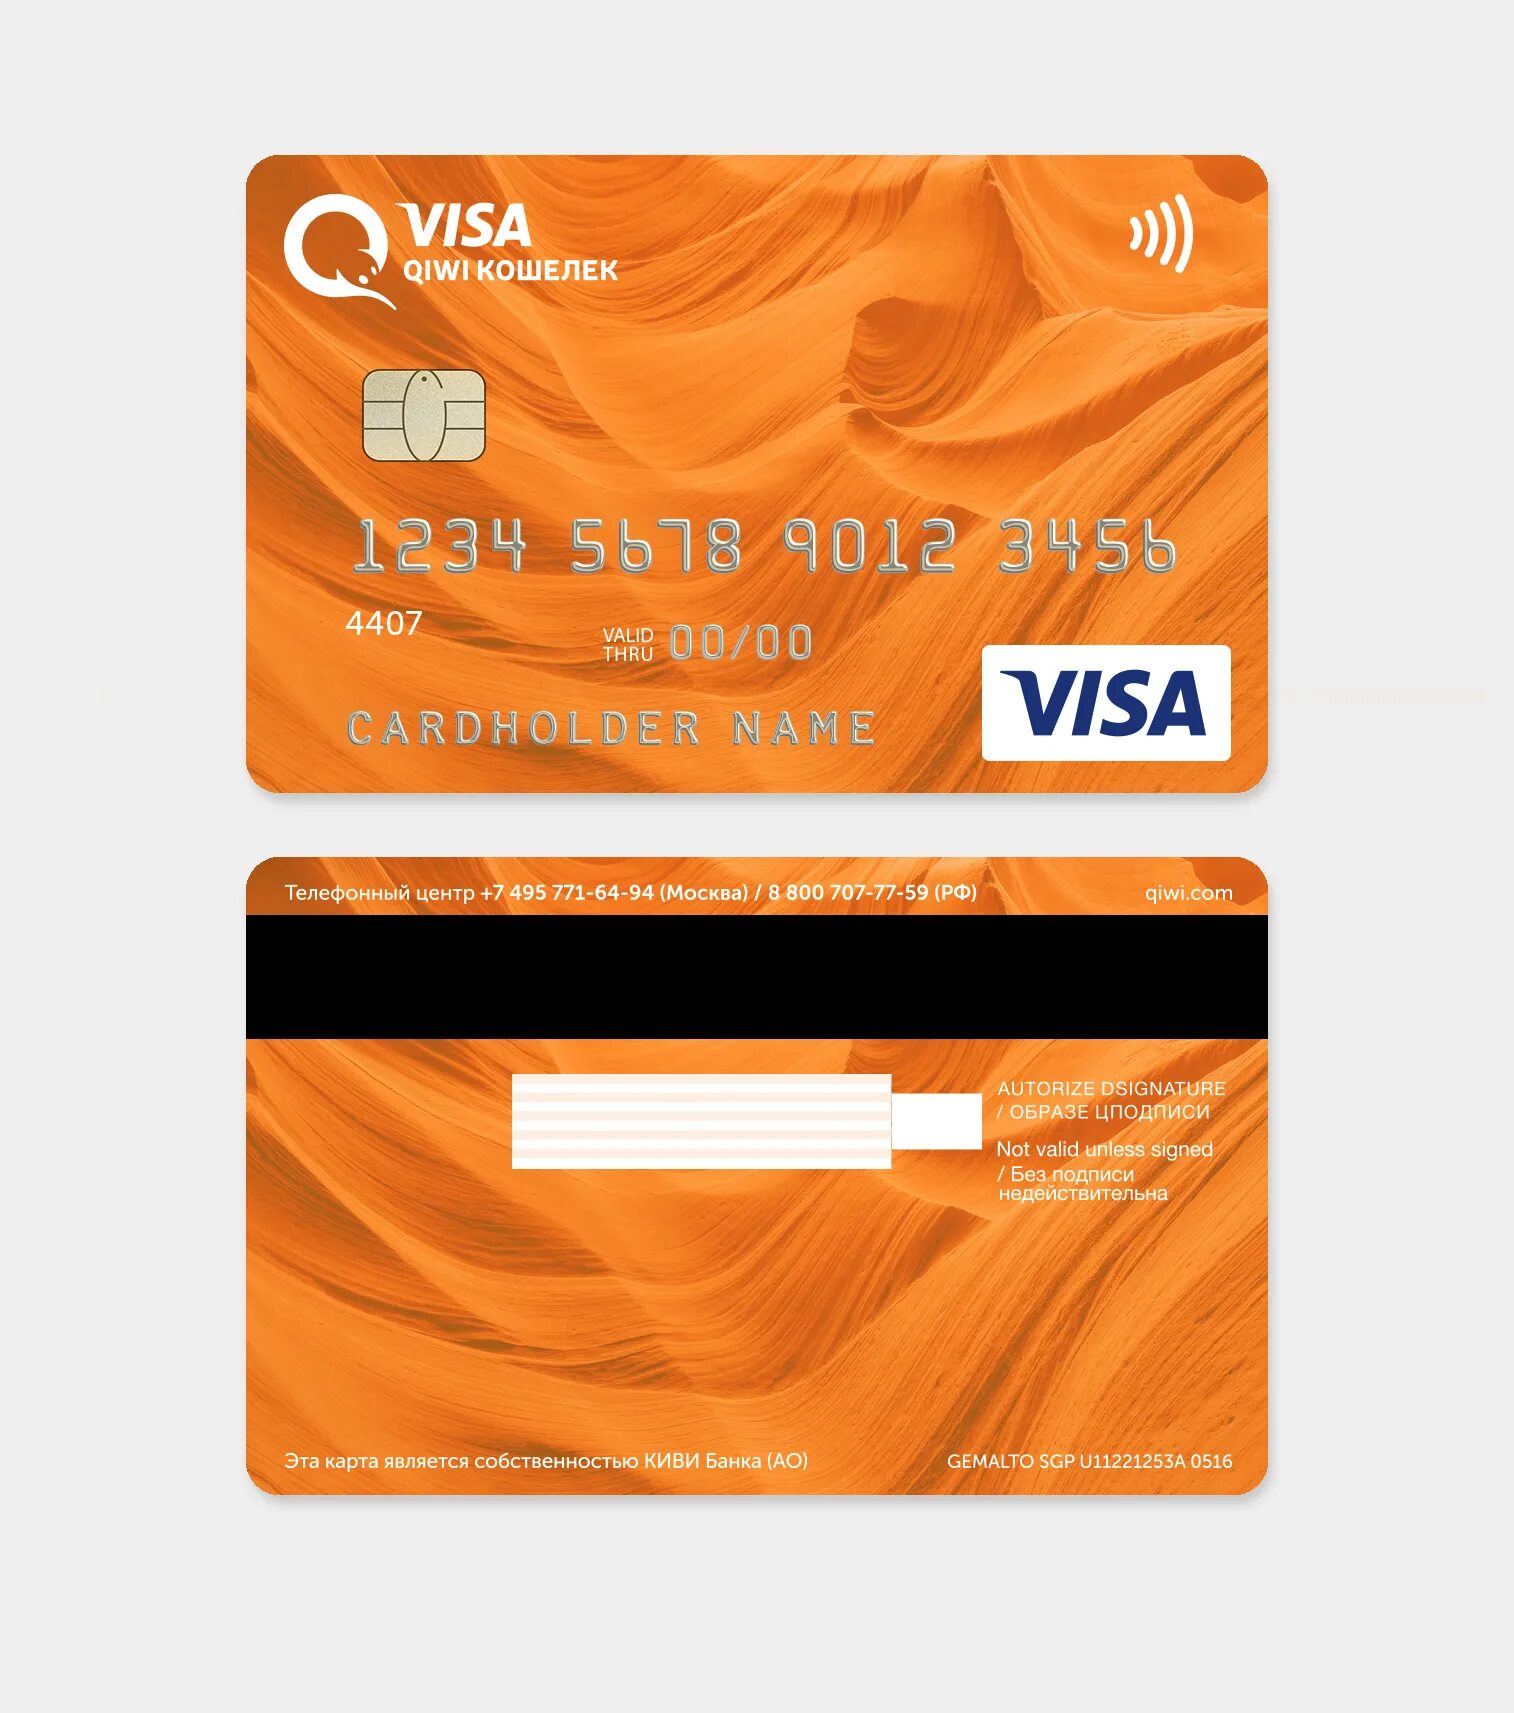 Visa кошелек. Банковская карта киви. Карта киви виза. QIWI карта пластиковая. Кредитная карта.